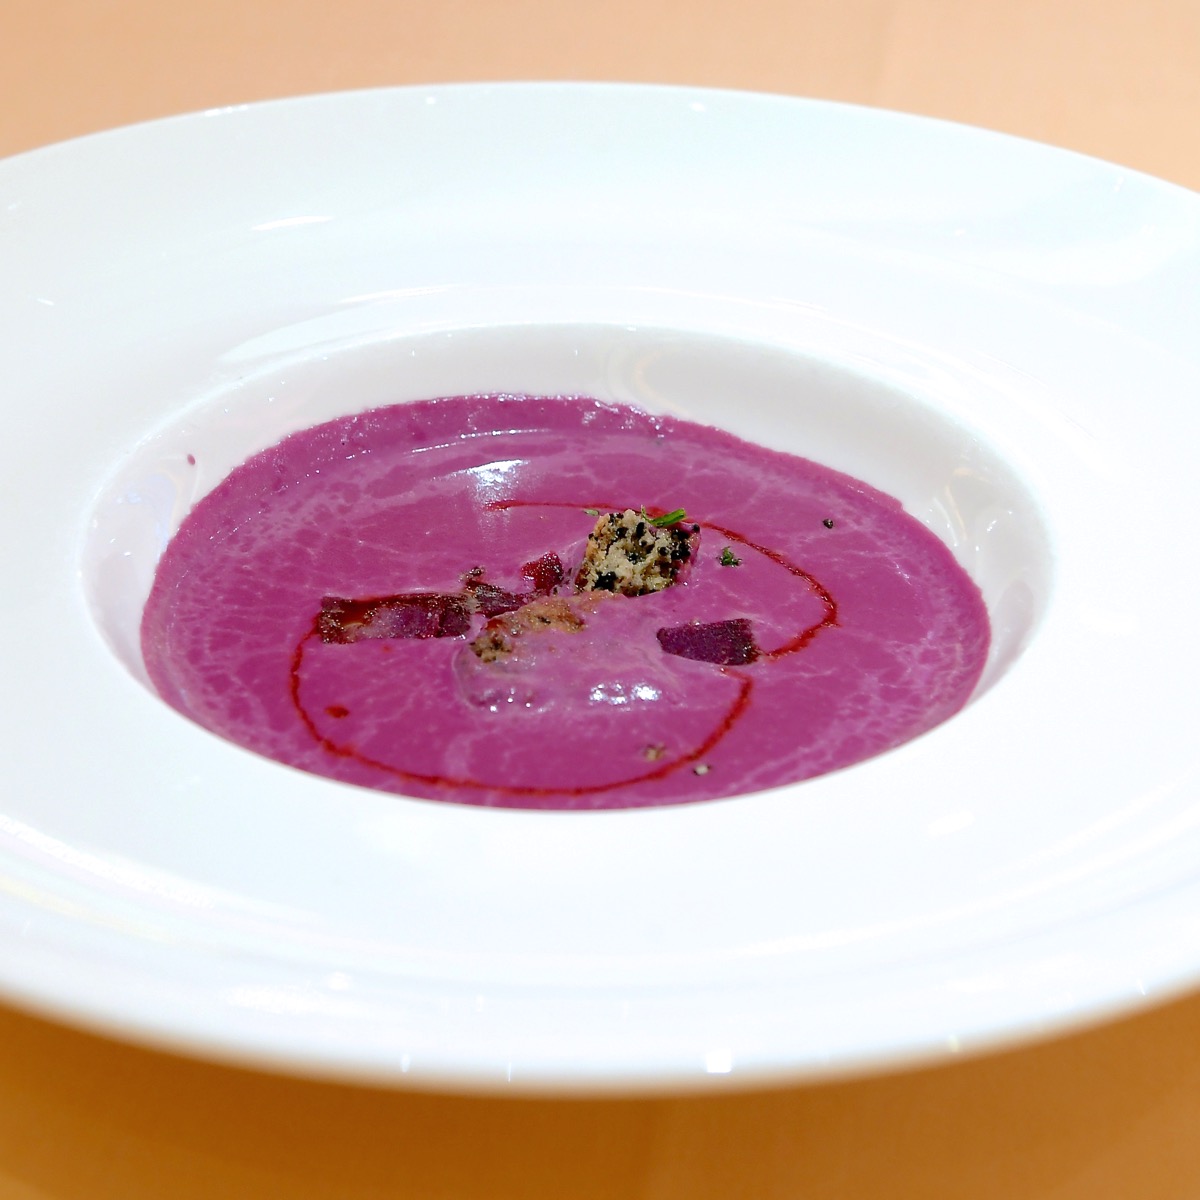 クリーミーな紫芋のスープ 黒ゴマのクランブルを添えて